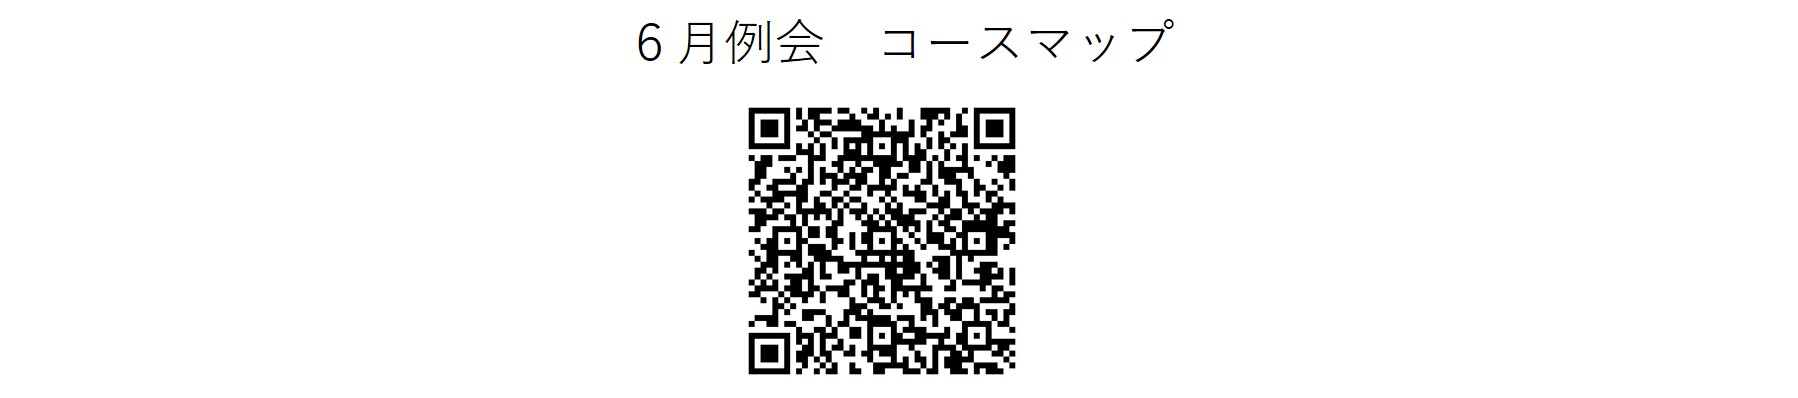 かしわんぽ用6月例会コースマップ.jpg